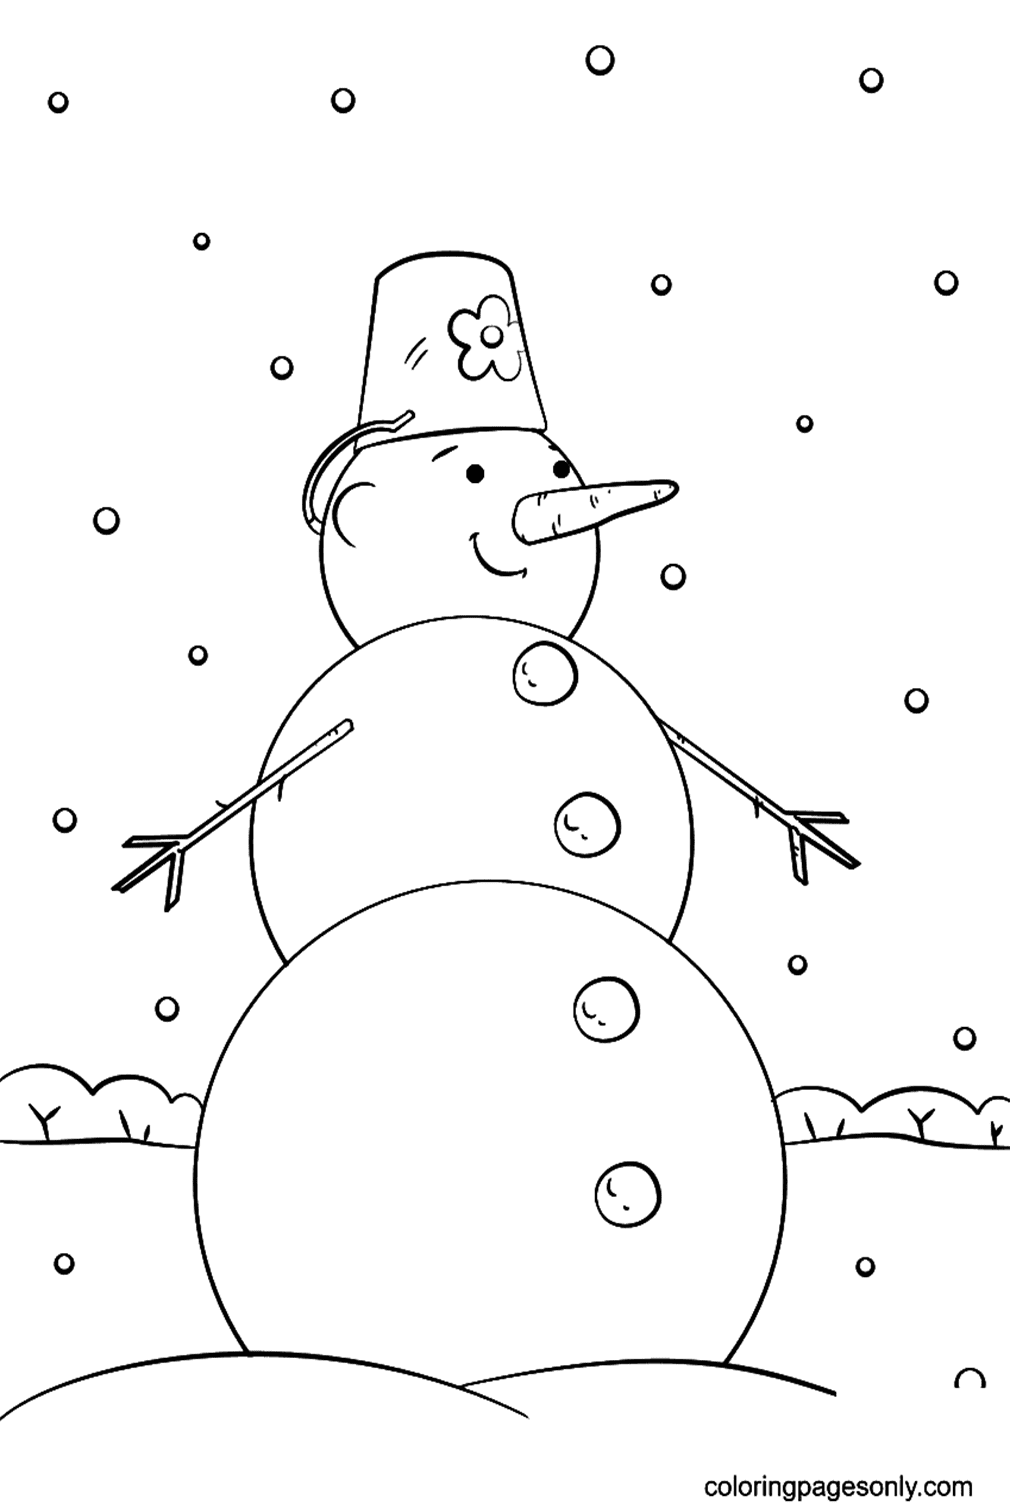 Милый мультяшный снеговик из мультфильма "Снеговик"